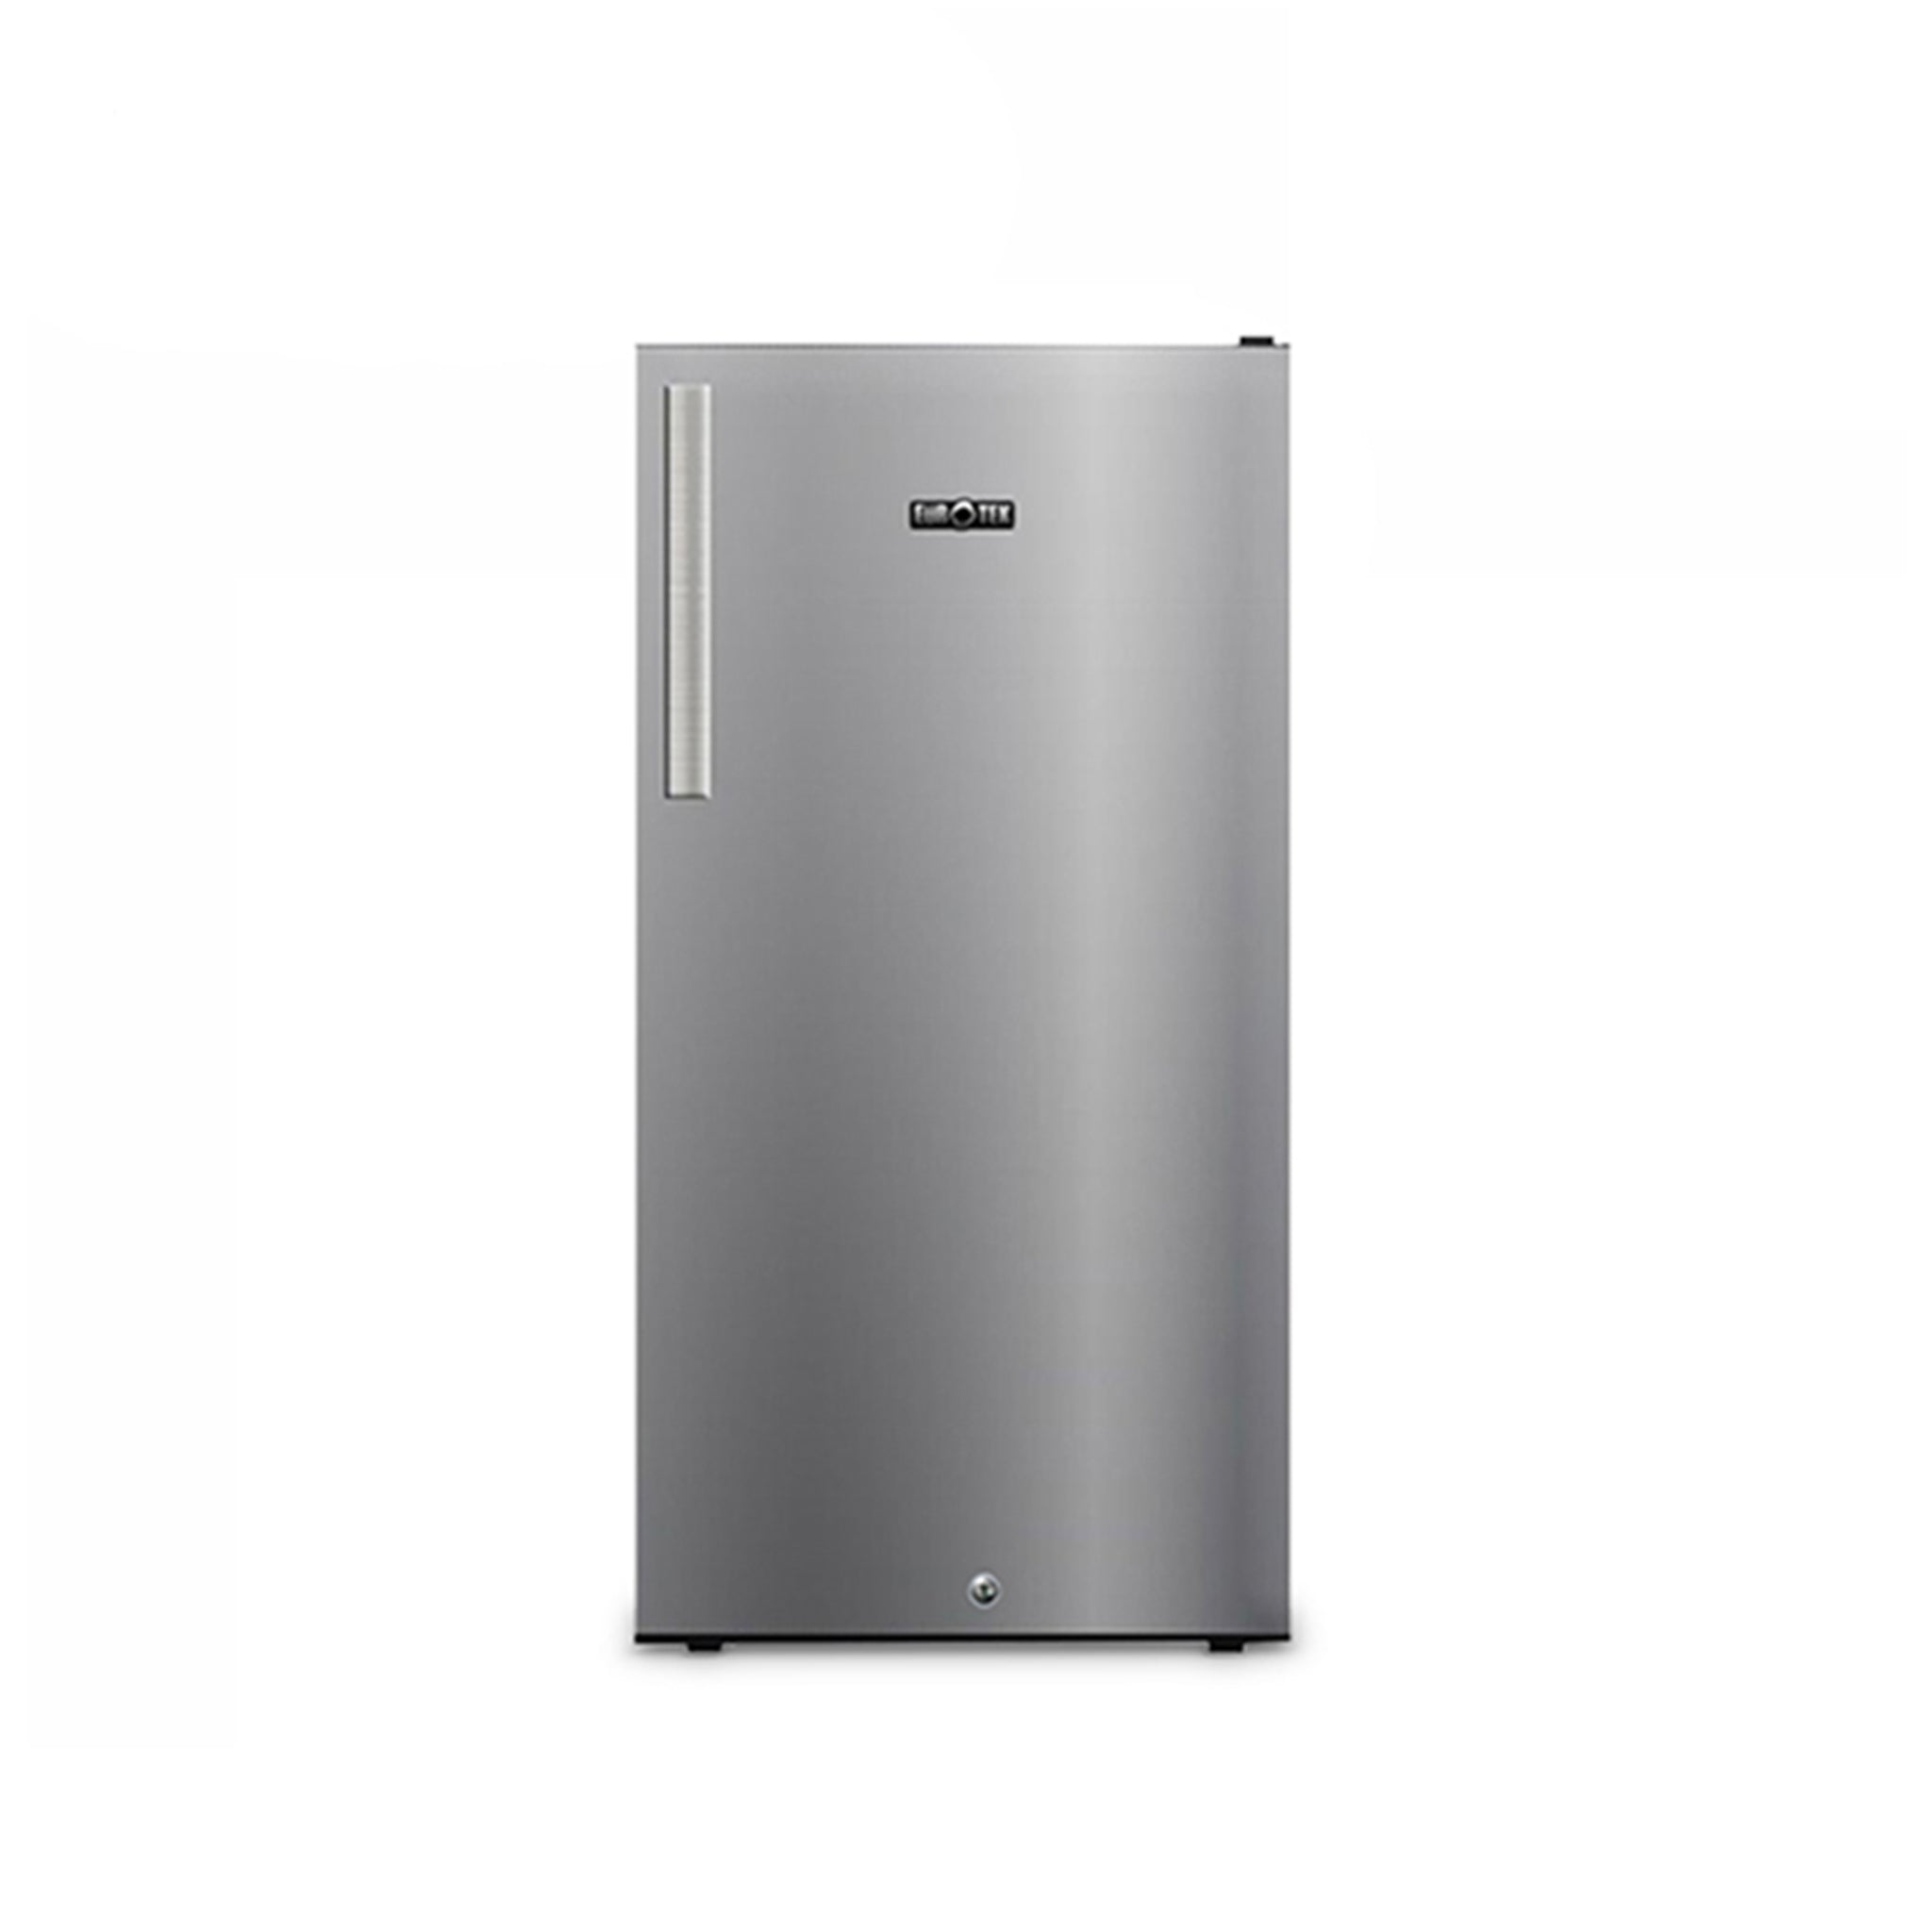 EUROTEK ER-851S 8.5 cu.ft Single Door Refrigerator Eurotek